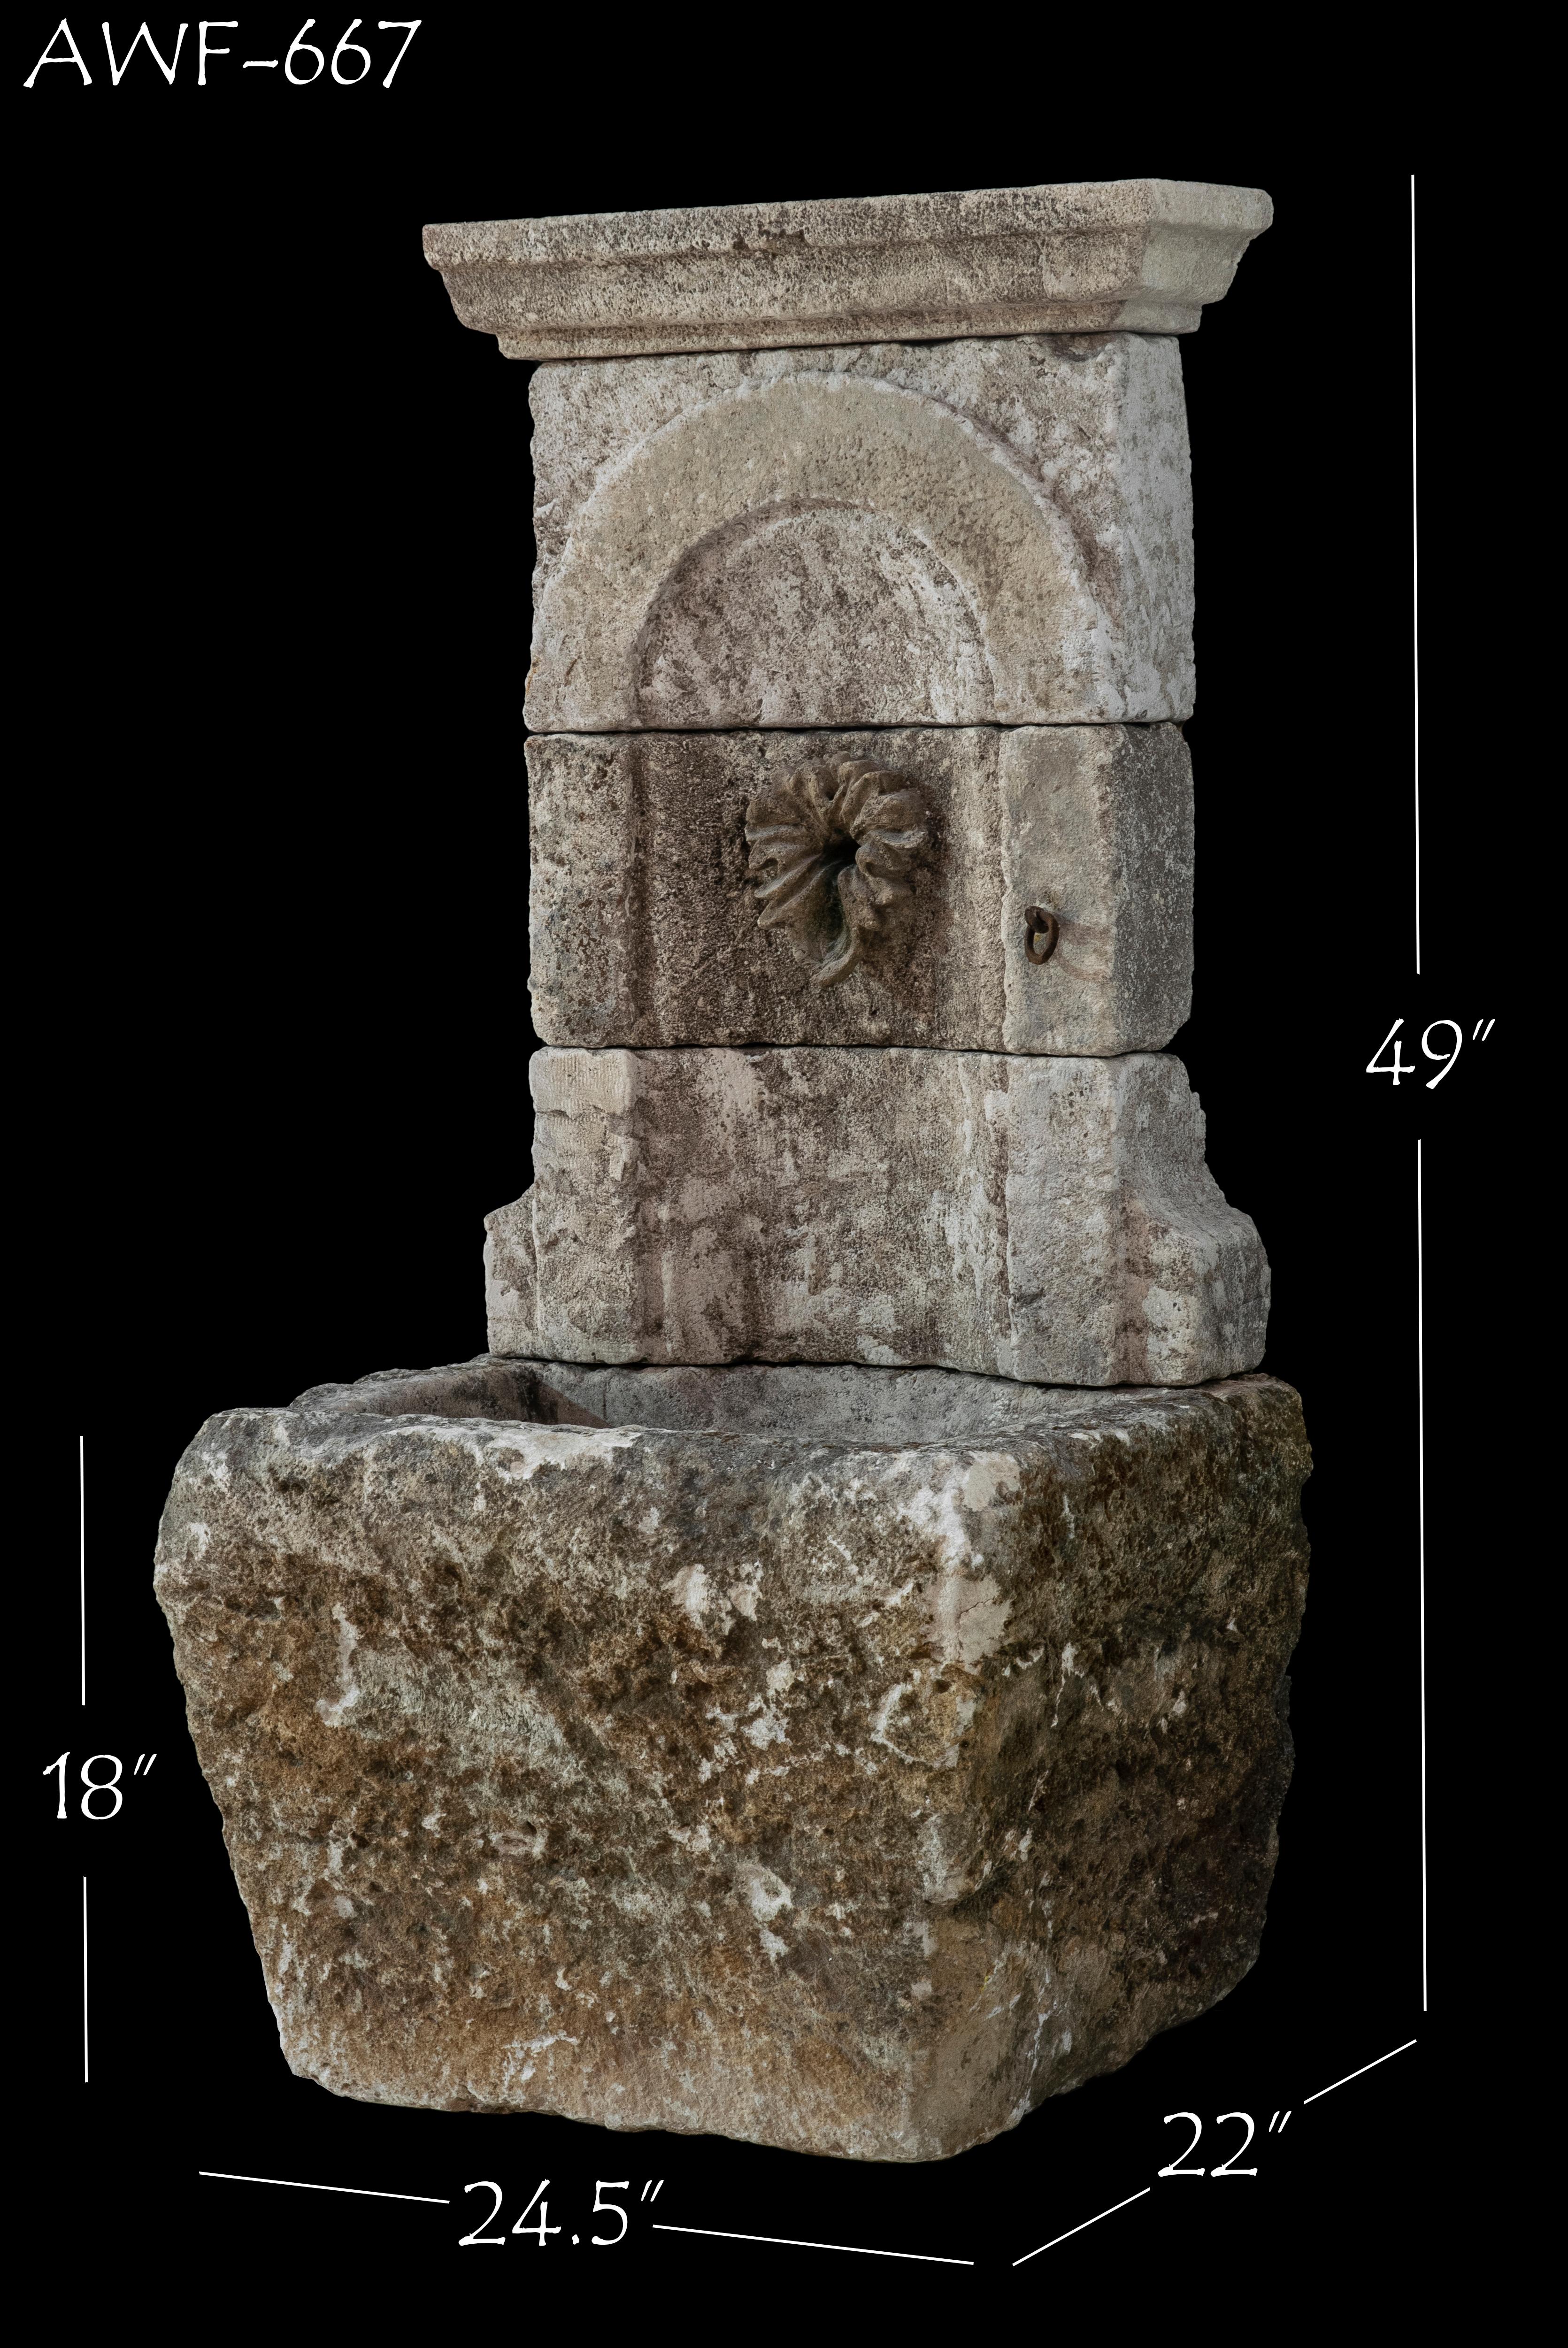 Dieser schöne antike Wandbrunnen aus Kalkstein aus dem 19. Jahrhundert ist eine großartige Ergänzung für jedes Haus im mediterranen, toskanischen, rustikalen oder anderen individuellen Stil. Die natürlich gealterte Farbe und die beschädigte Patina